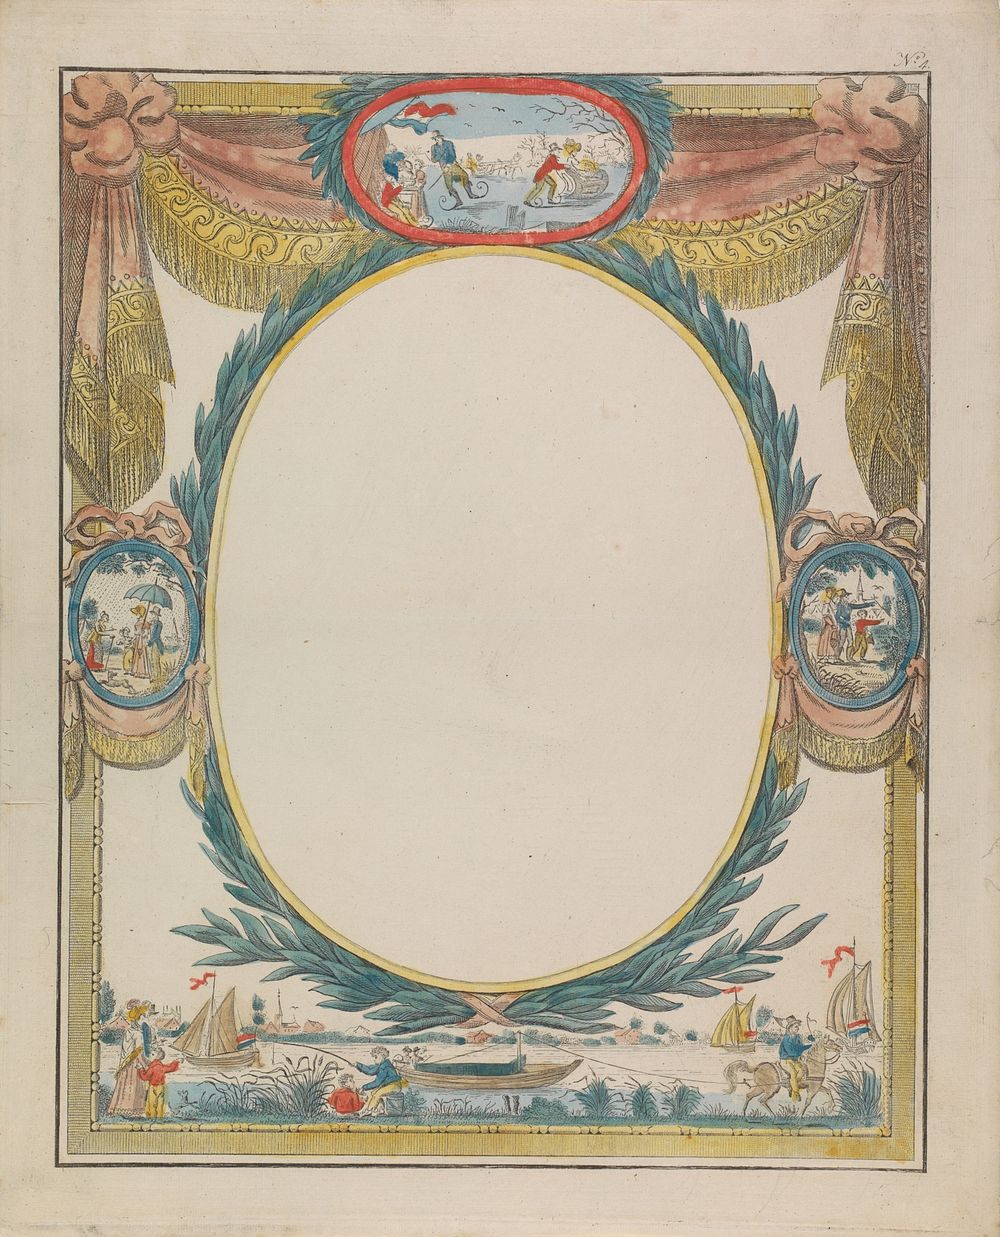 Wensbrief met trekschuit (1792 - 1847) by Hendrik Moolenyzer and anonymous